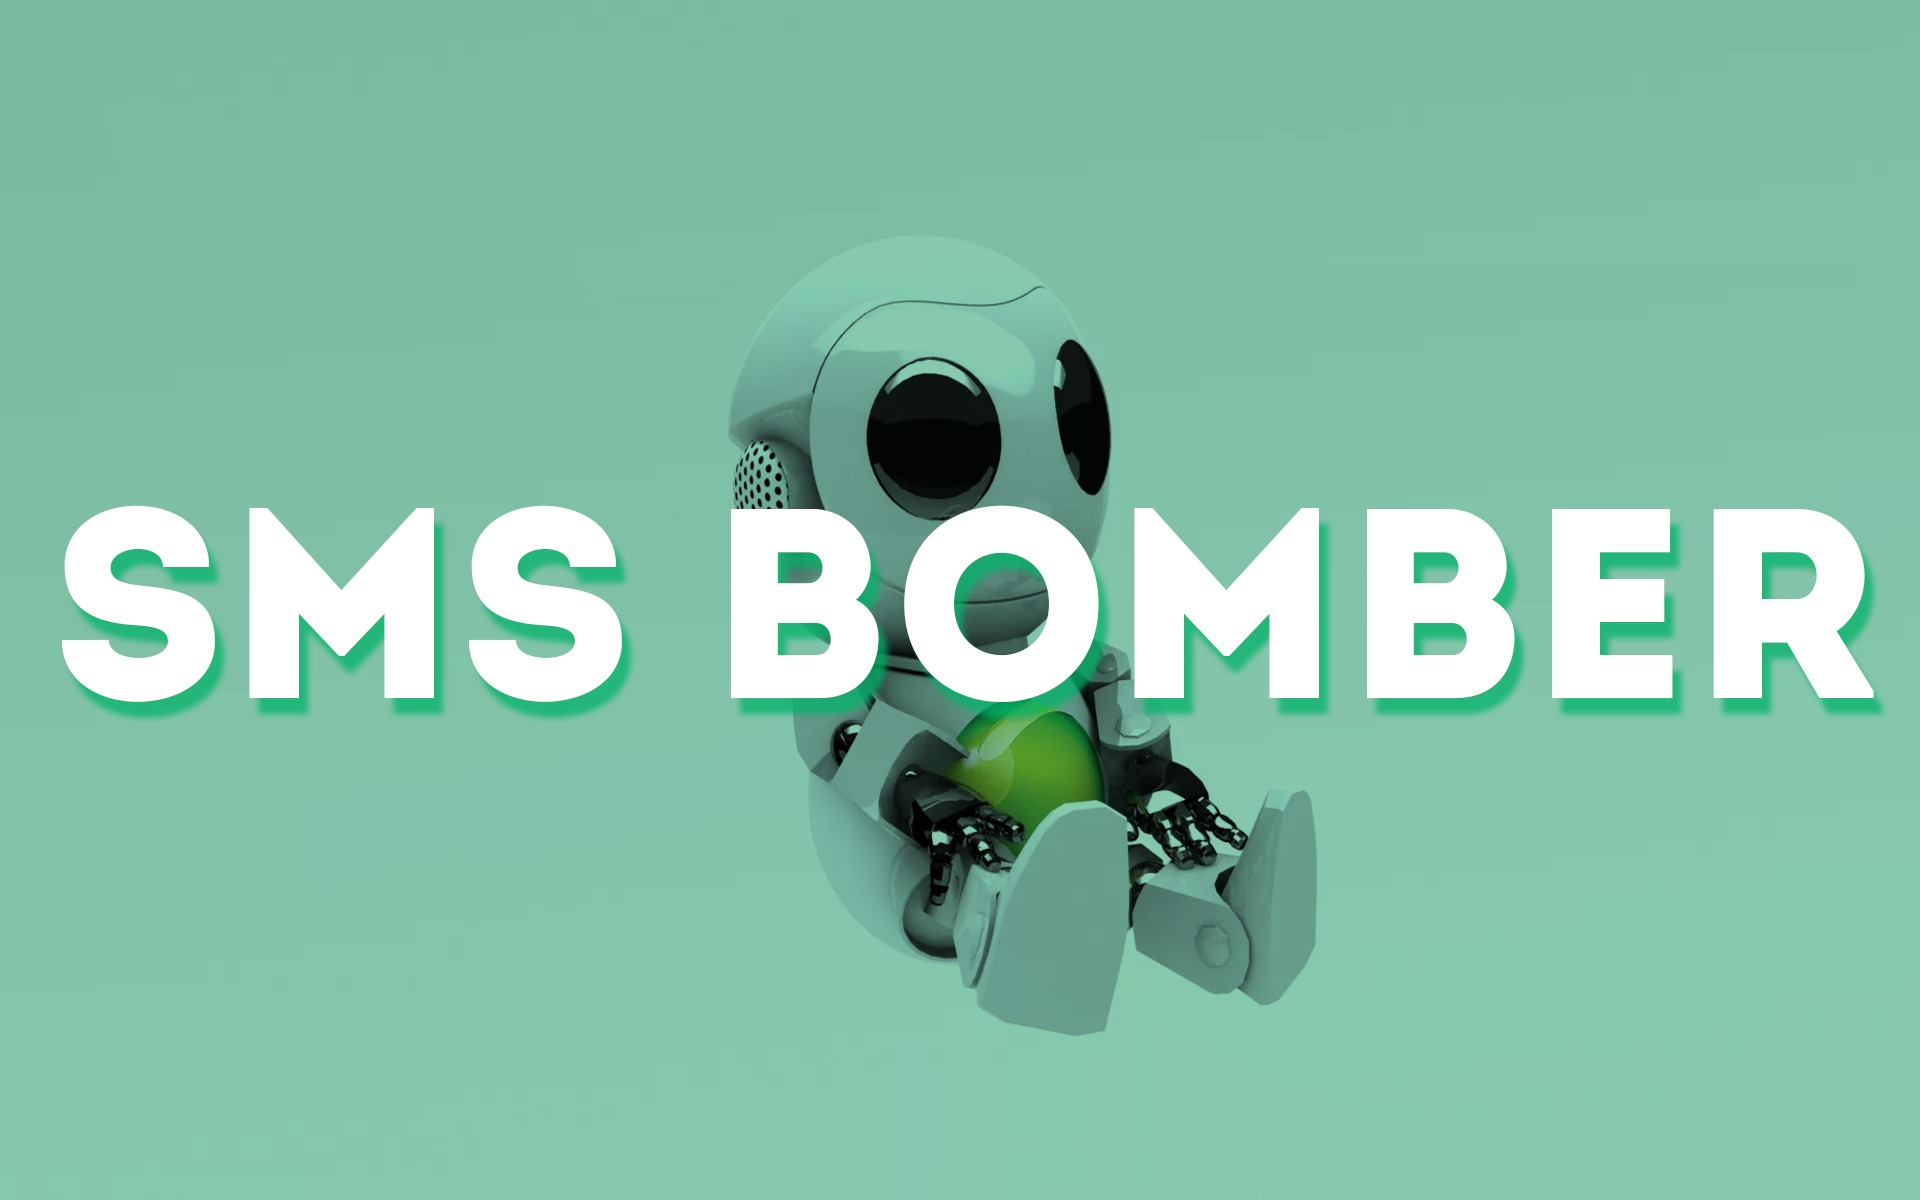 Скачать бомбер бесплатно через телеграмм фото 15